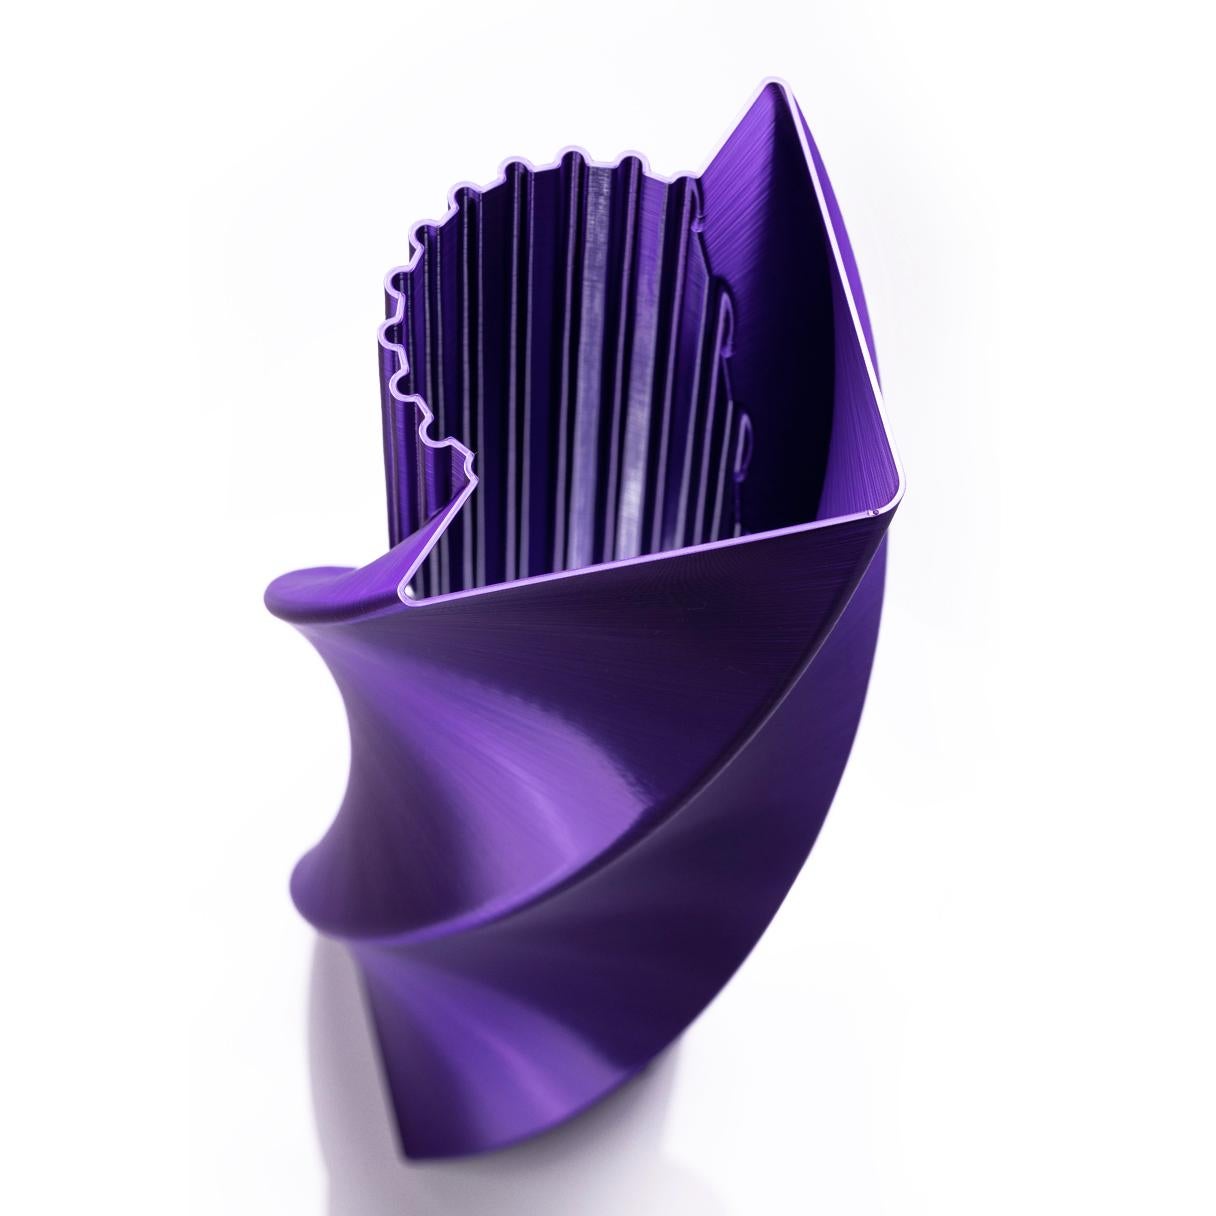 Postmoderne Acropolis, Vase-sculpture durable contemporain violet